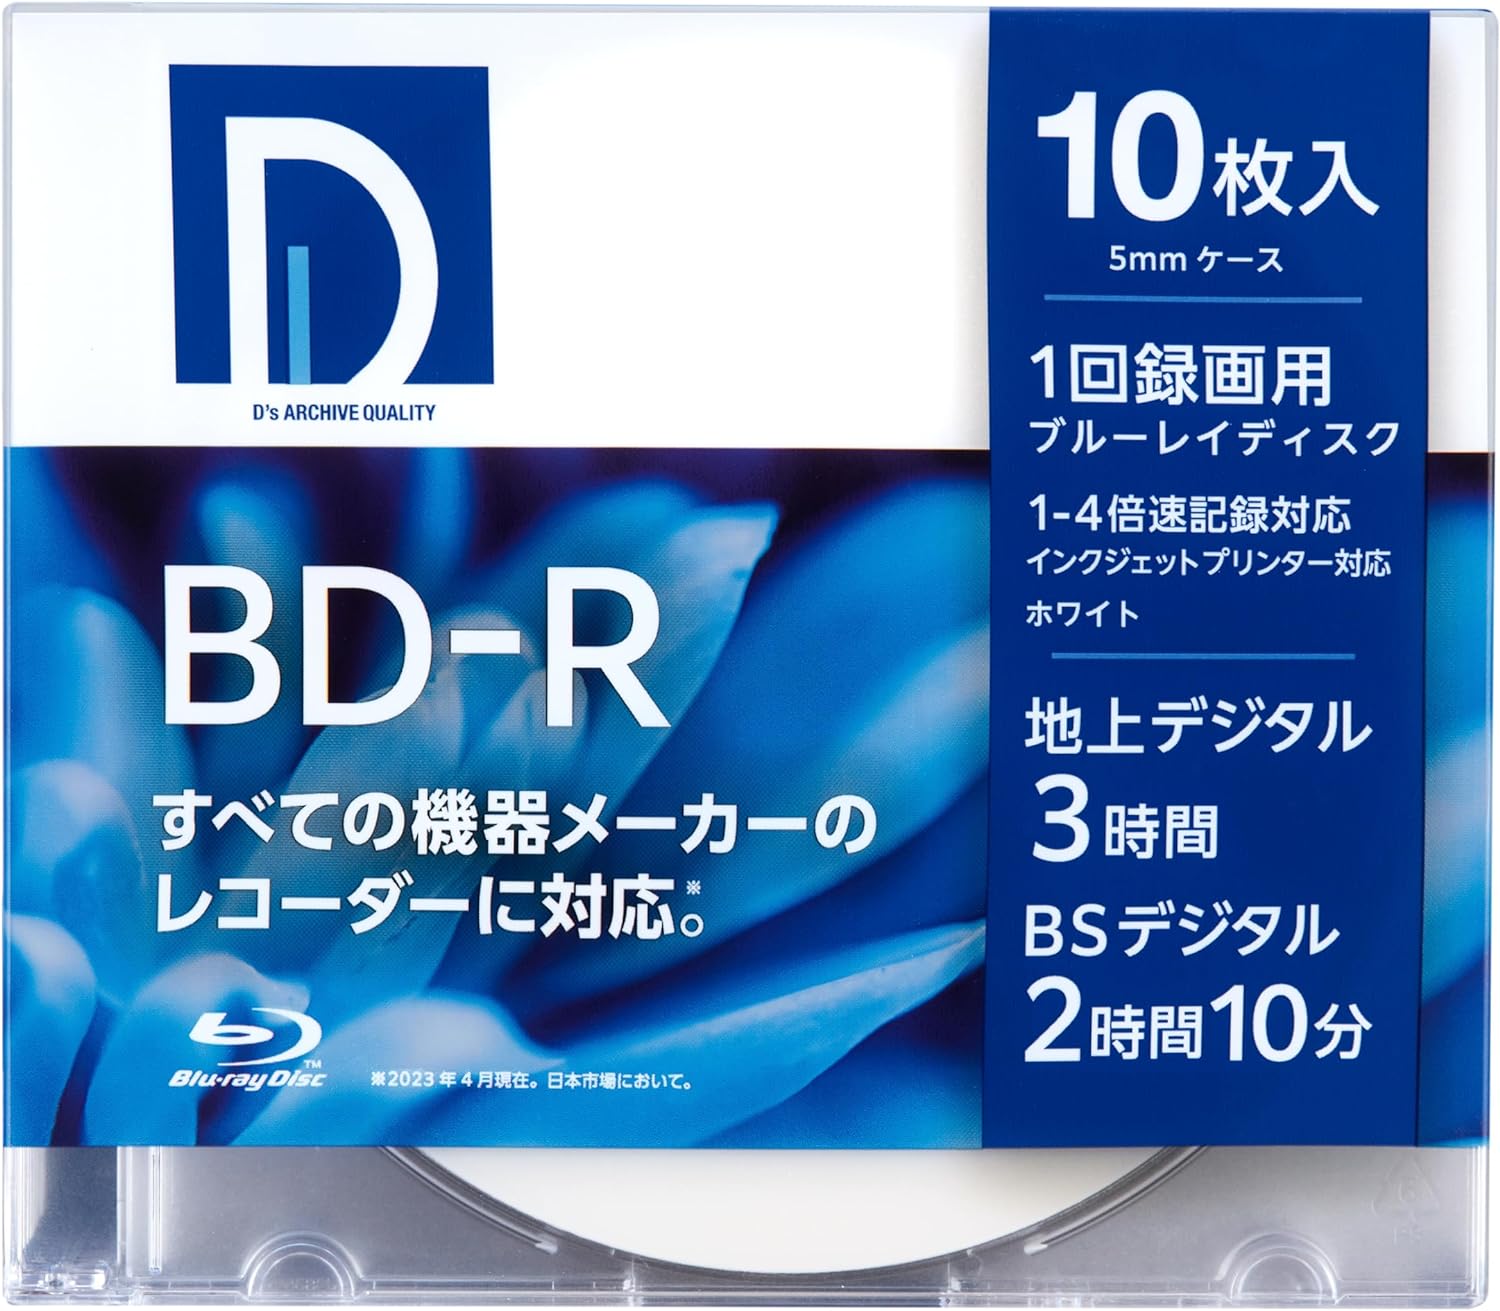 Denkyo Group Online Store｜ディーズ・クオリティー D's QUALITY 録画用 BD-R 25GB 1回録画用 1-4倍速  ホワイトレーベル 10枚 BR25DP.10S: テレビ・記録メディア楽しく彩る商品を取りそろえた通販サイト「株式会社  電響社」の公式ショッピングページです。